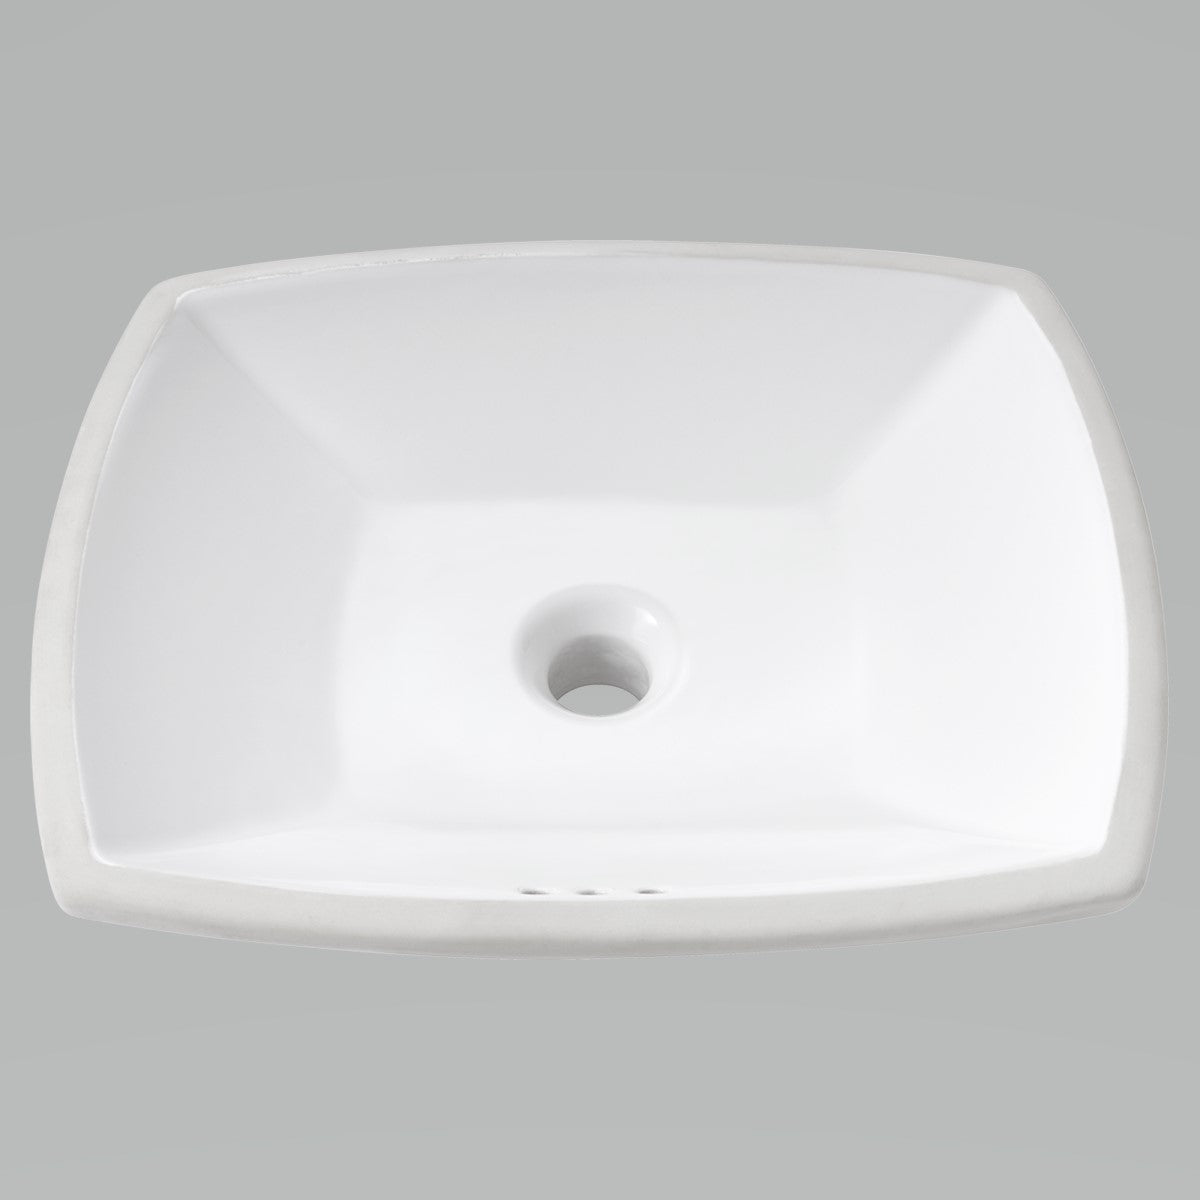 American Standard 545000 020 Edgemere Ceramic Undermount Bathroom Sink